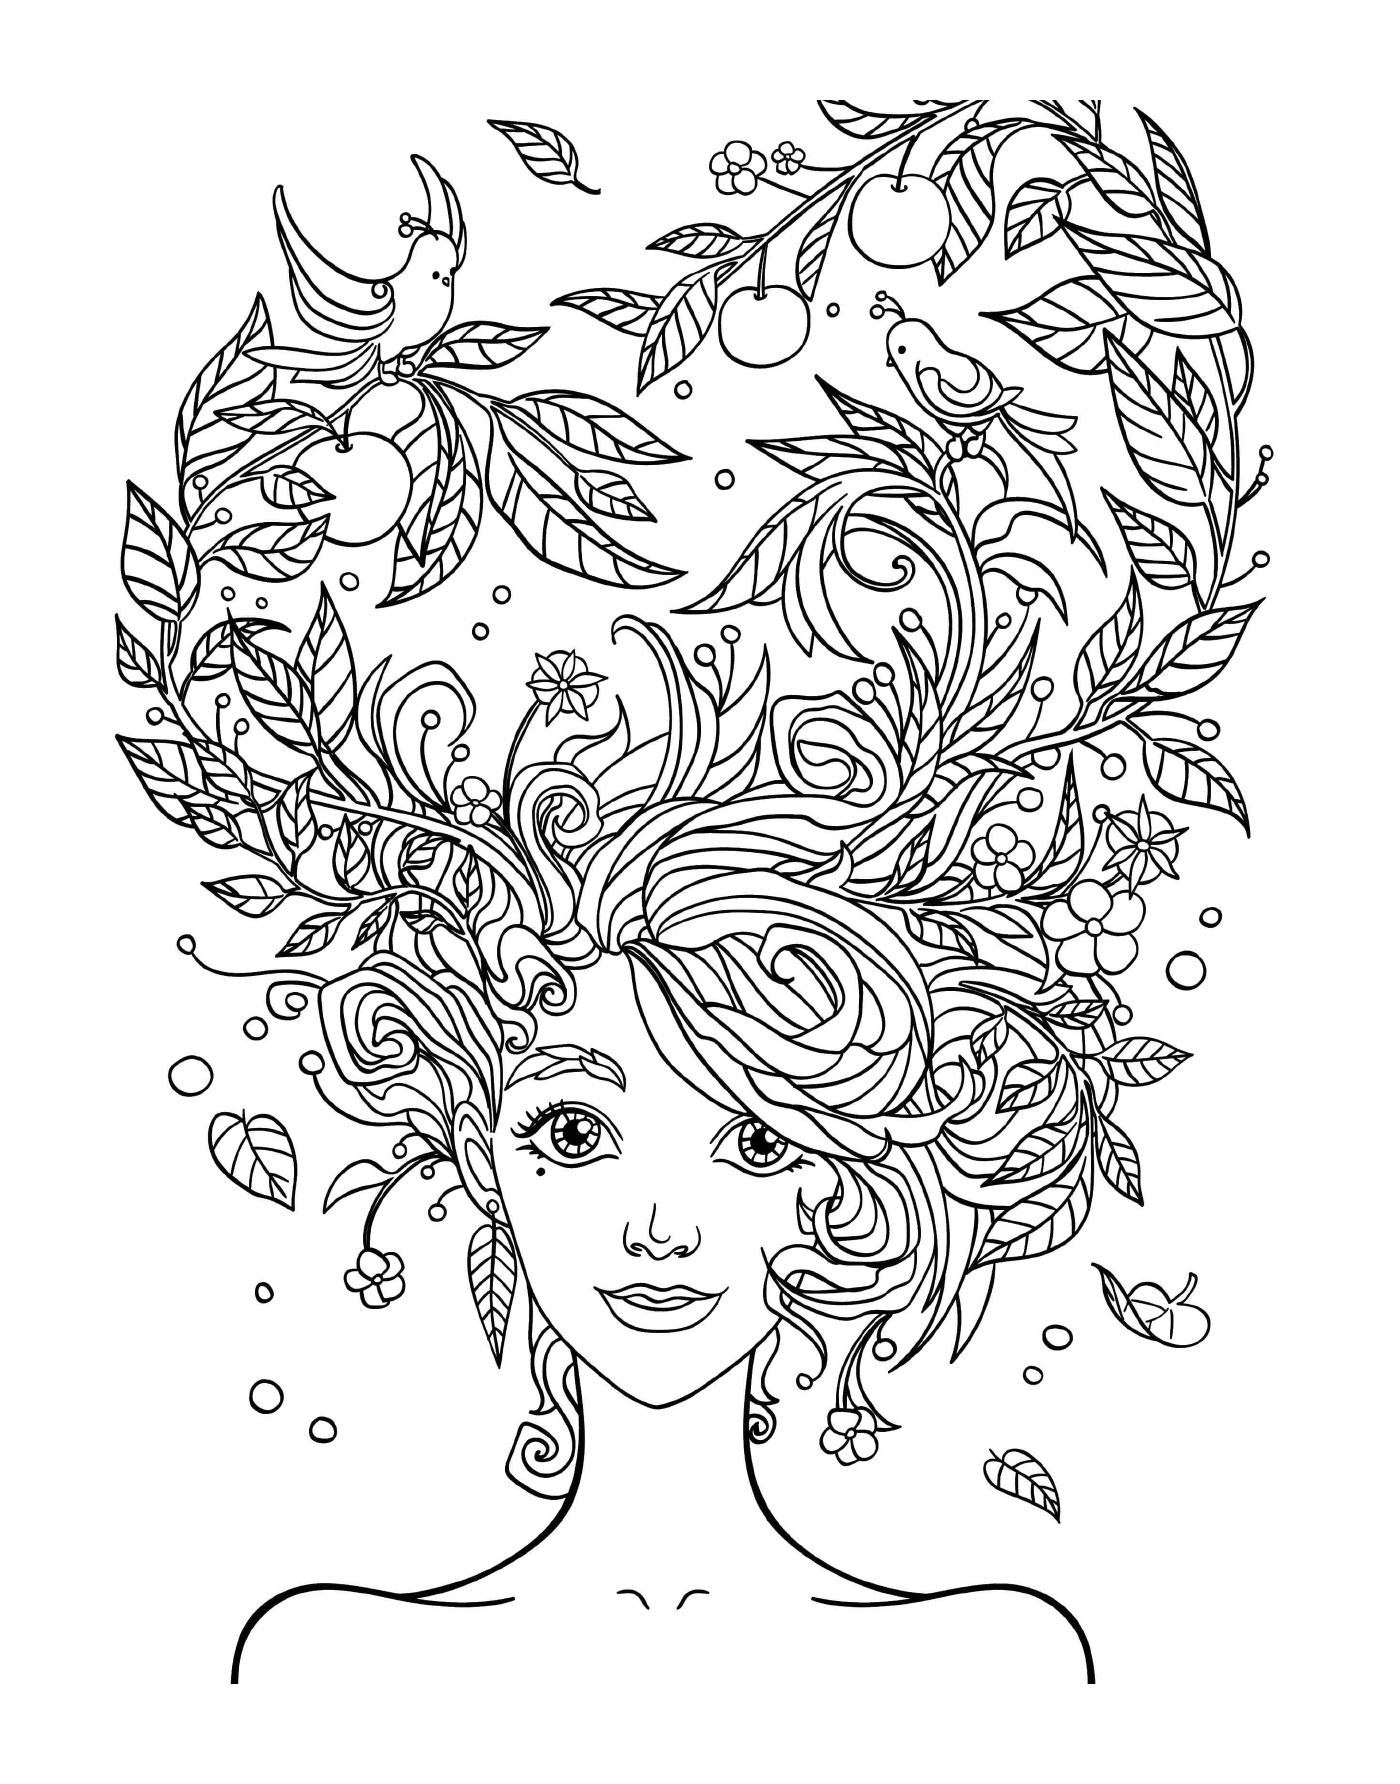  A cabeça de uma mulher com flores no cabelo 